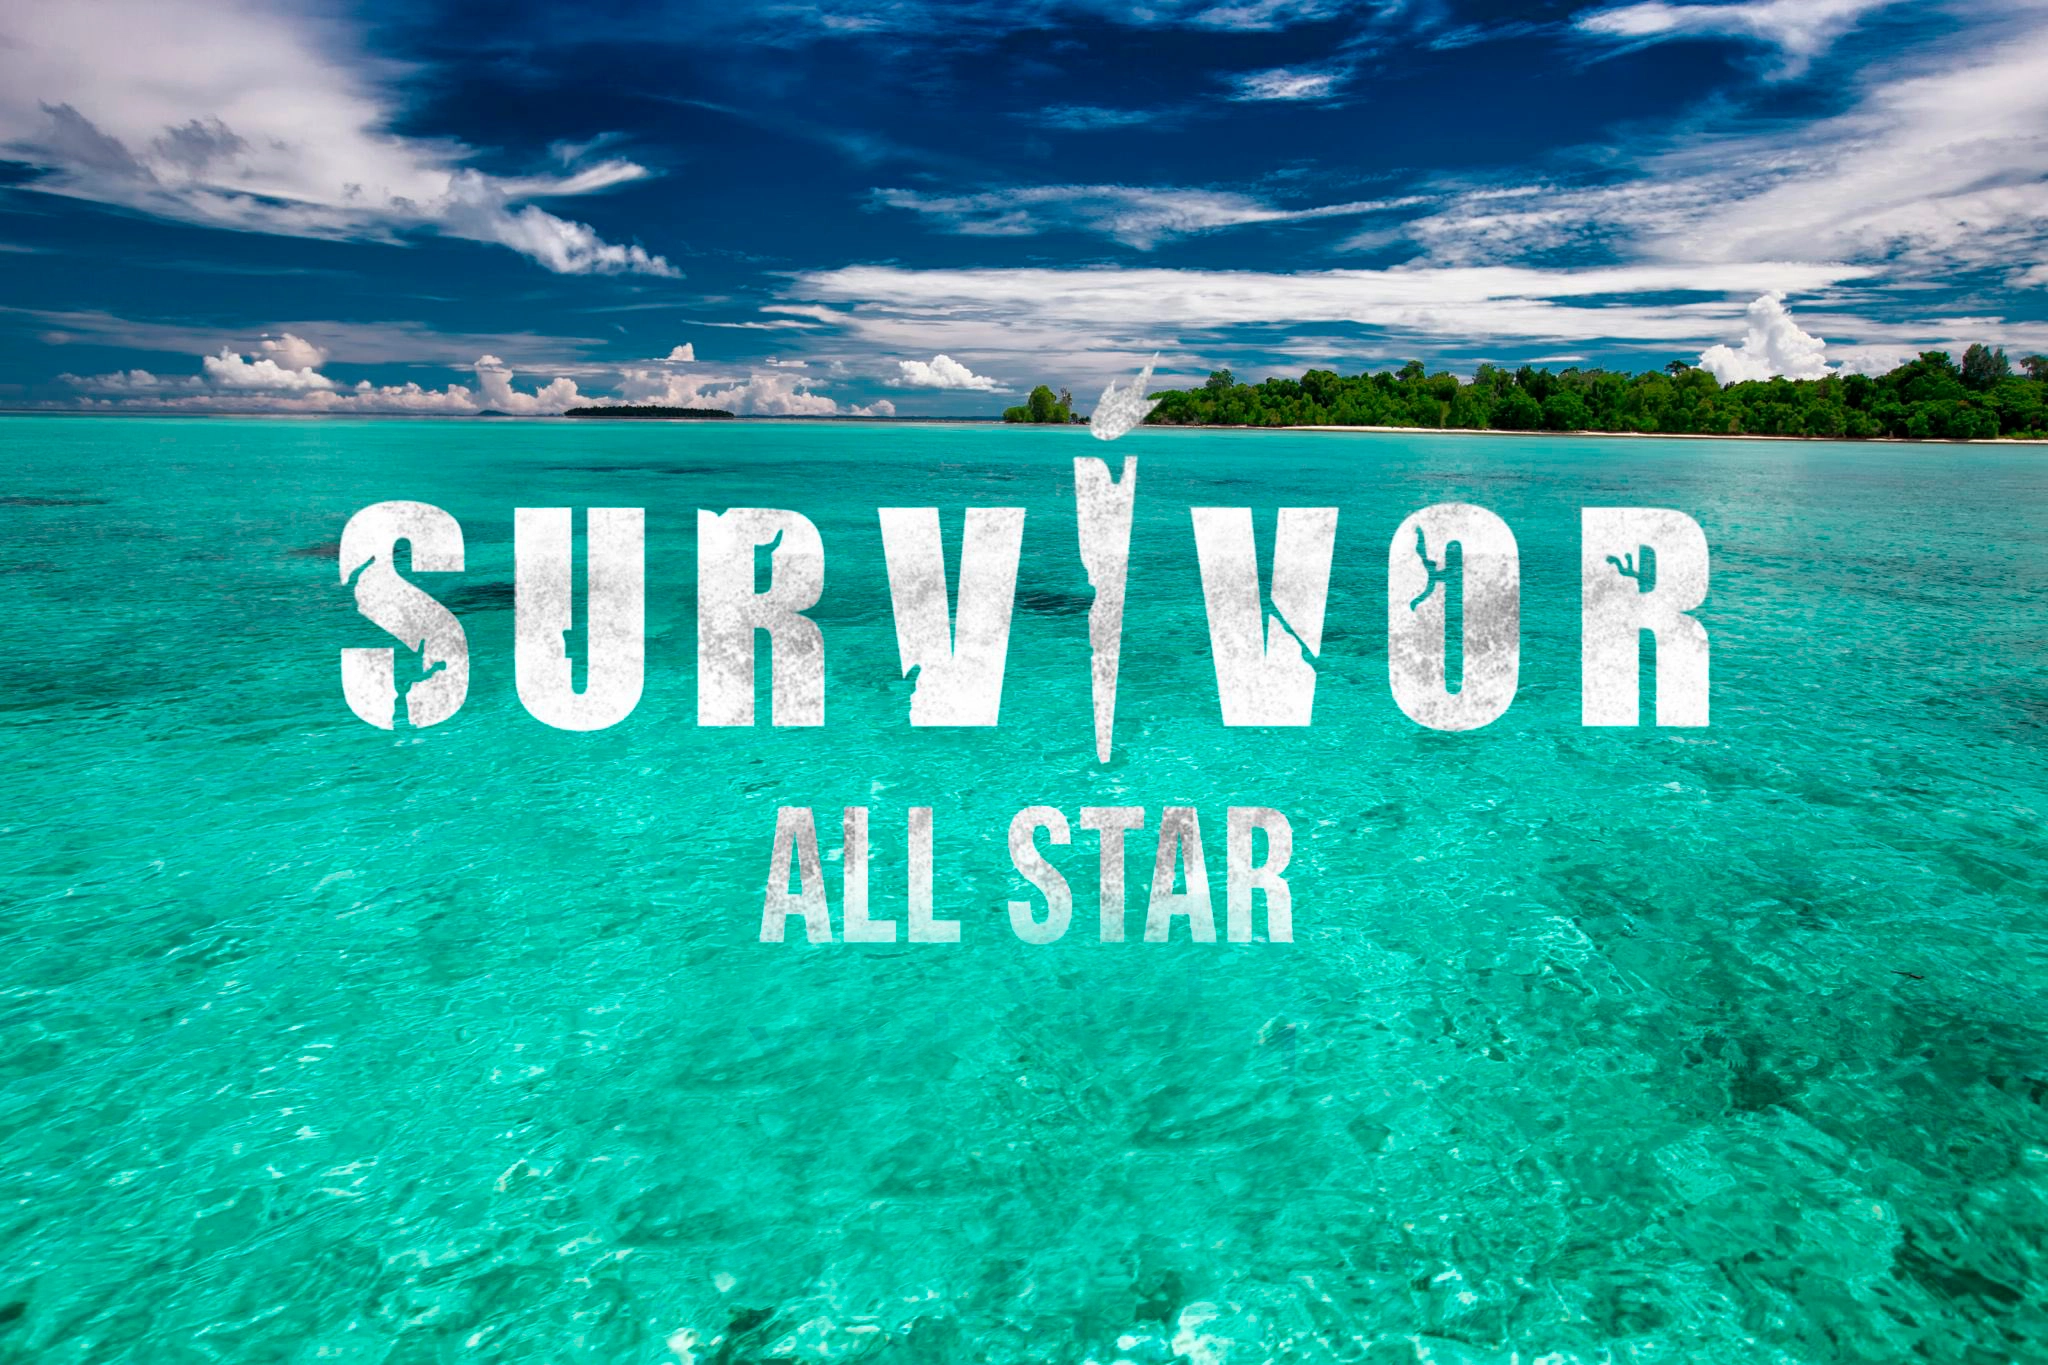 Survivor dokunulmazlık oyununu kim kazandı? 5 Şubat Survivor All Star'da dokunulmazlık oyununu kazanan hangi takım oldu?